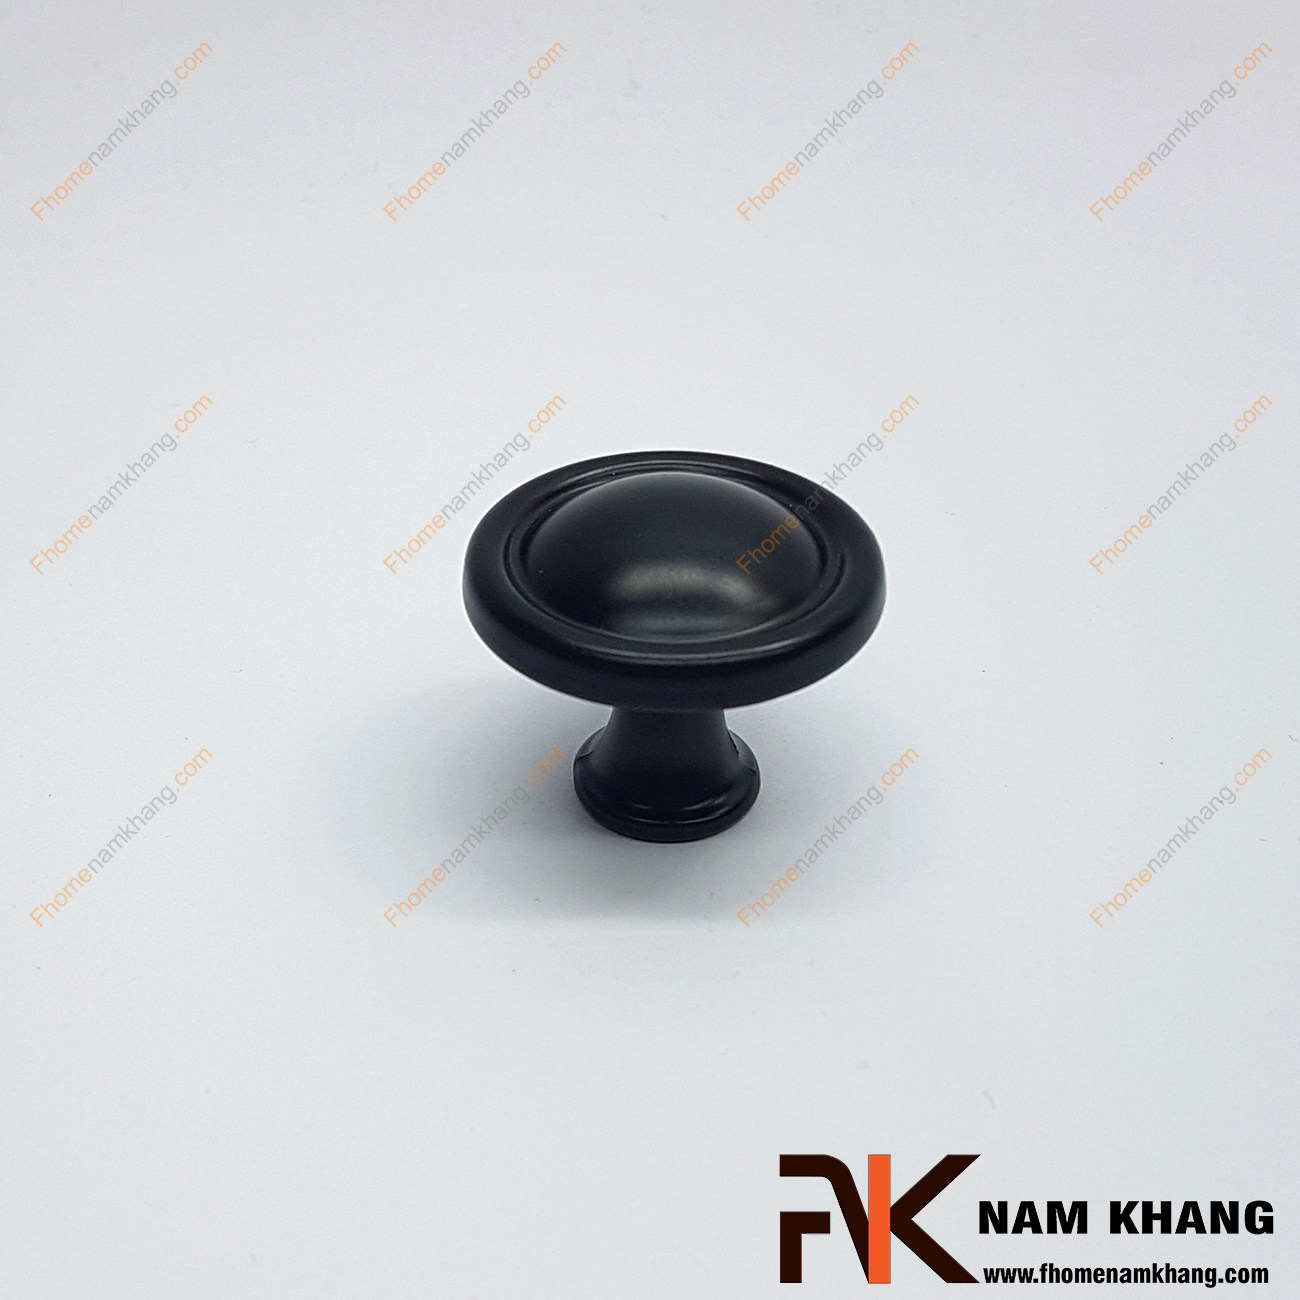 Núm nắm tủ dạng tròn màu đen NK236-D được sử dụng nhiều trên nhiều phong cách tủ kệ khác nhau. Sản phẩm được tin dùng trên các loại tủ kệ trưng bày, tủ quần áo, tủ phong thủy , ngăn kệ bàn làm việc,